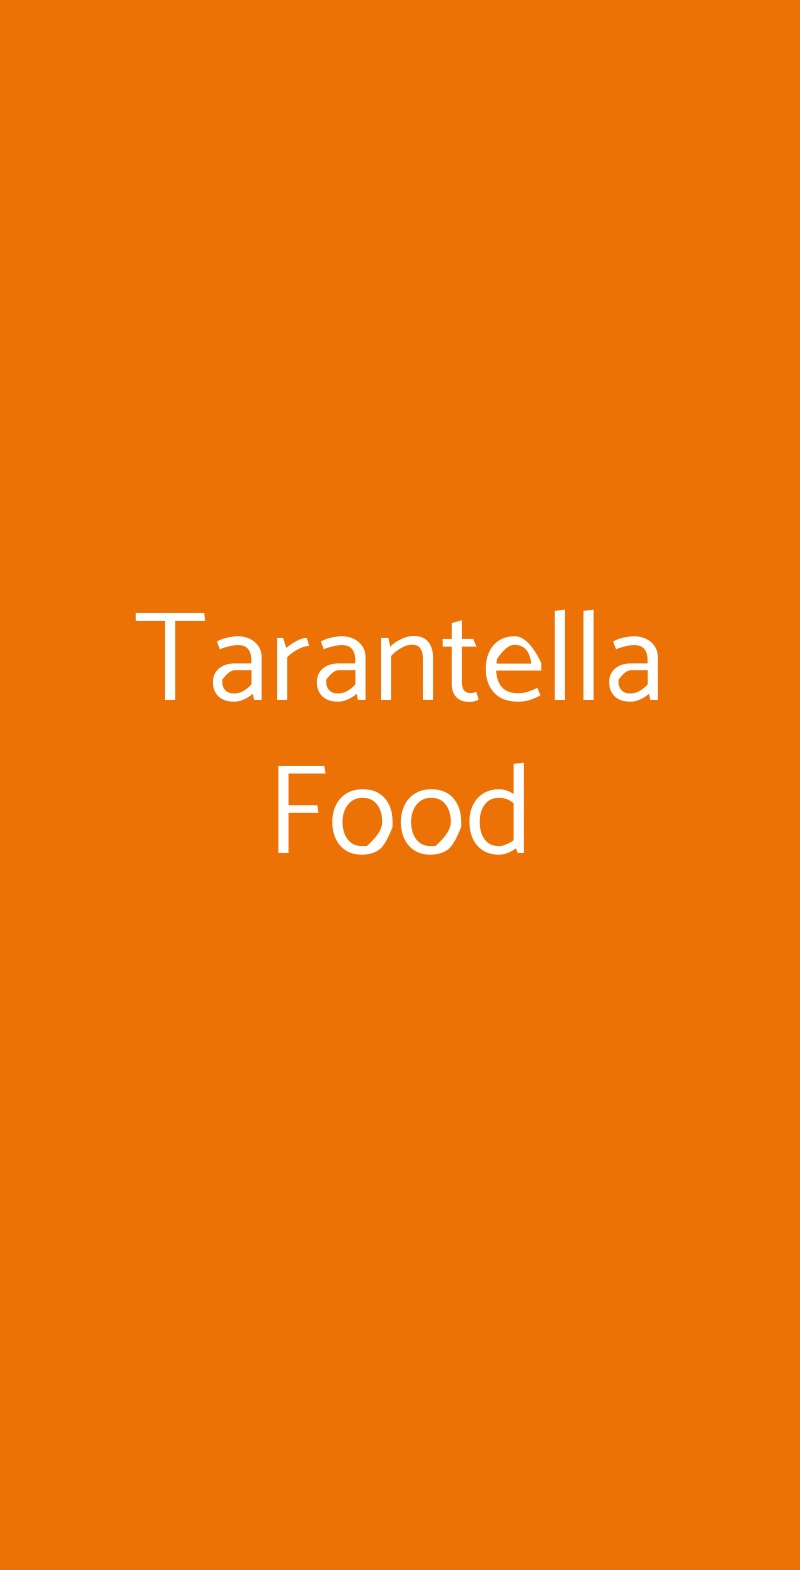 Tarantella Food Verona menù 1 pagina